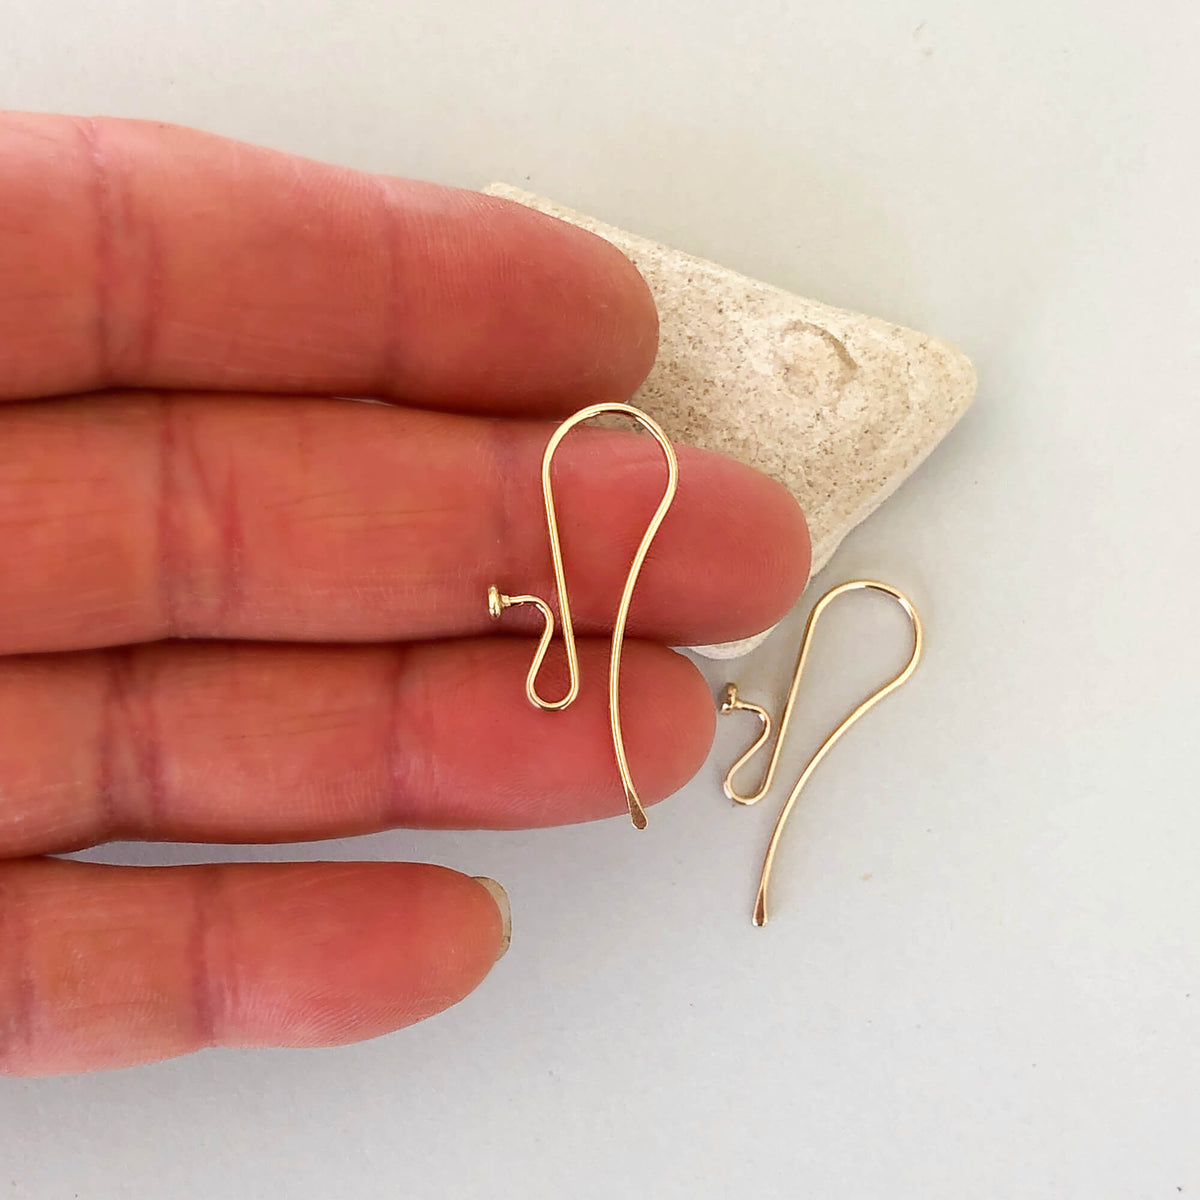 Earring Hooks / French Hook / Earwires / Dangle Earring (Gold / 20